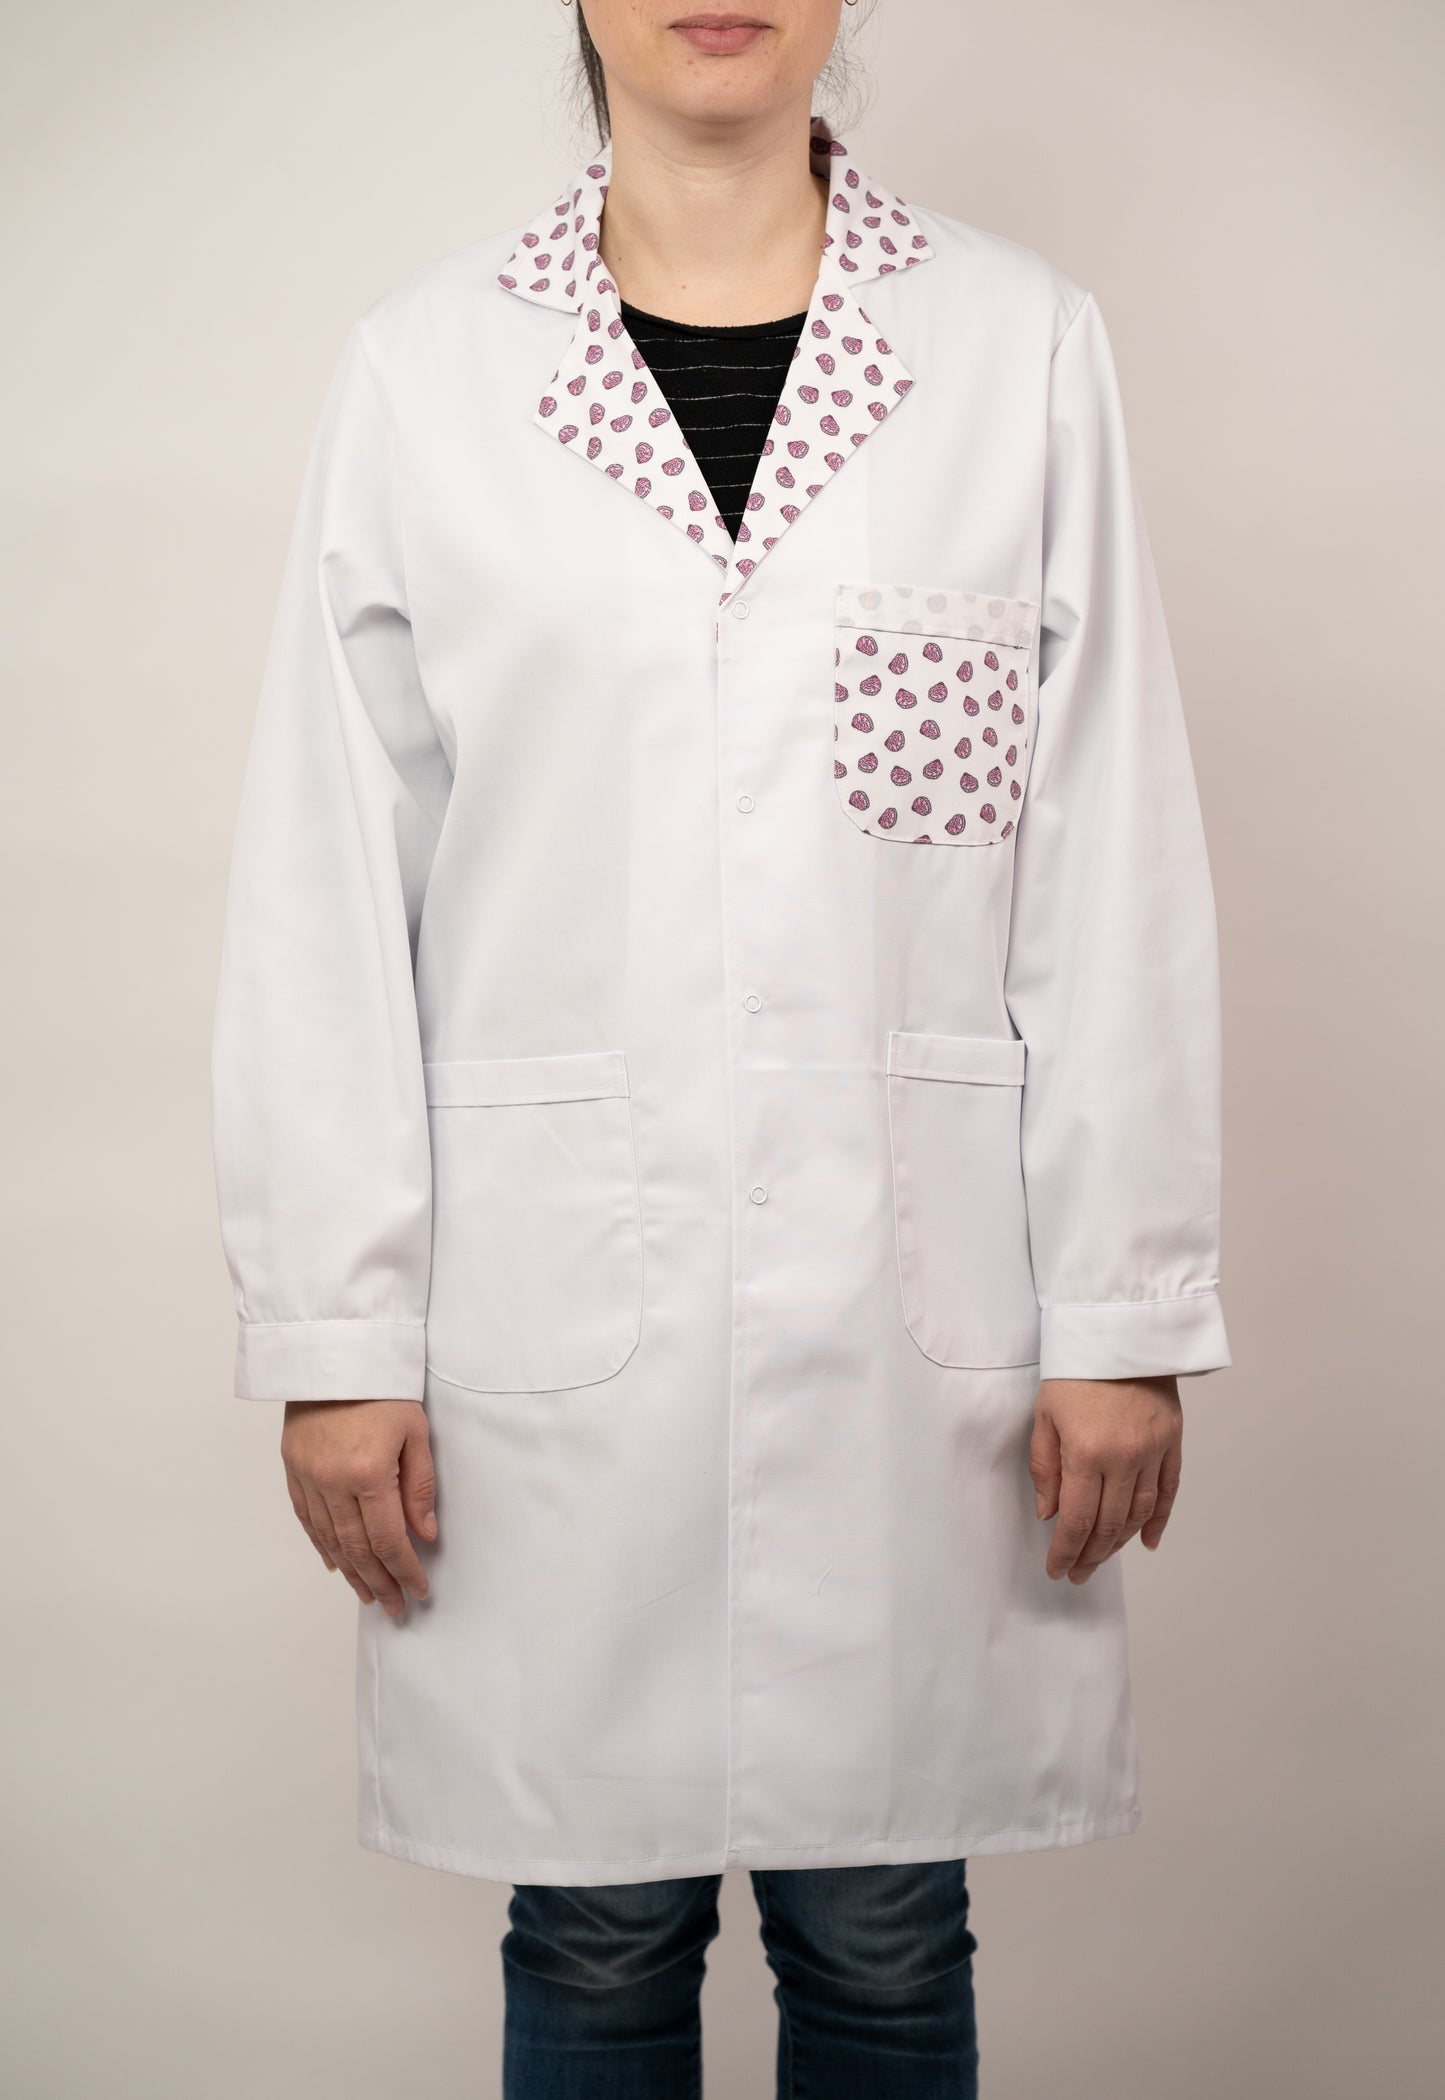 'Brain' lab coat